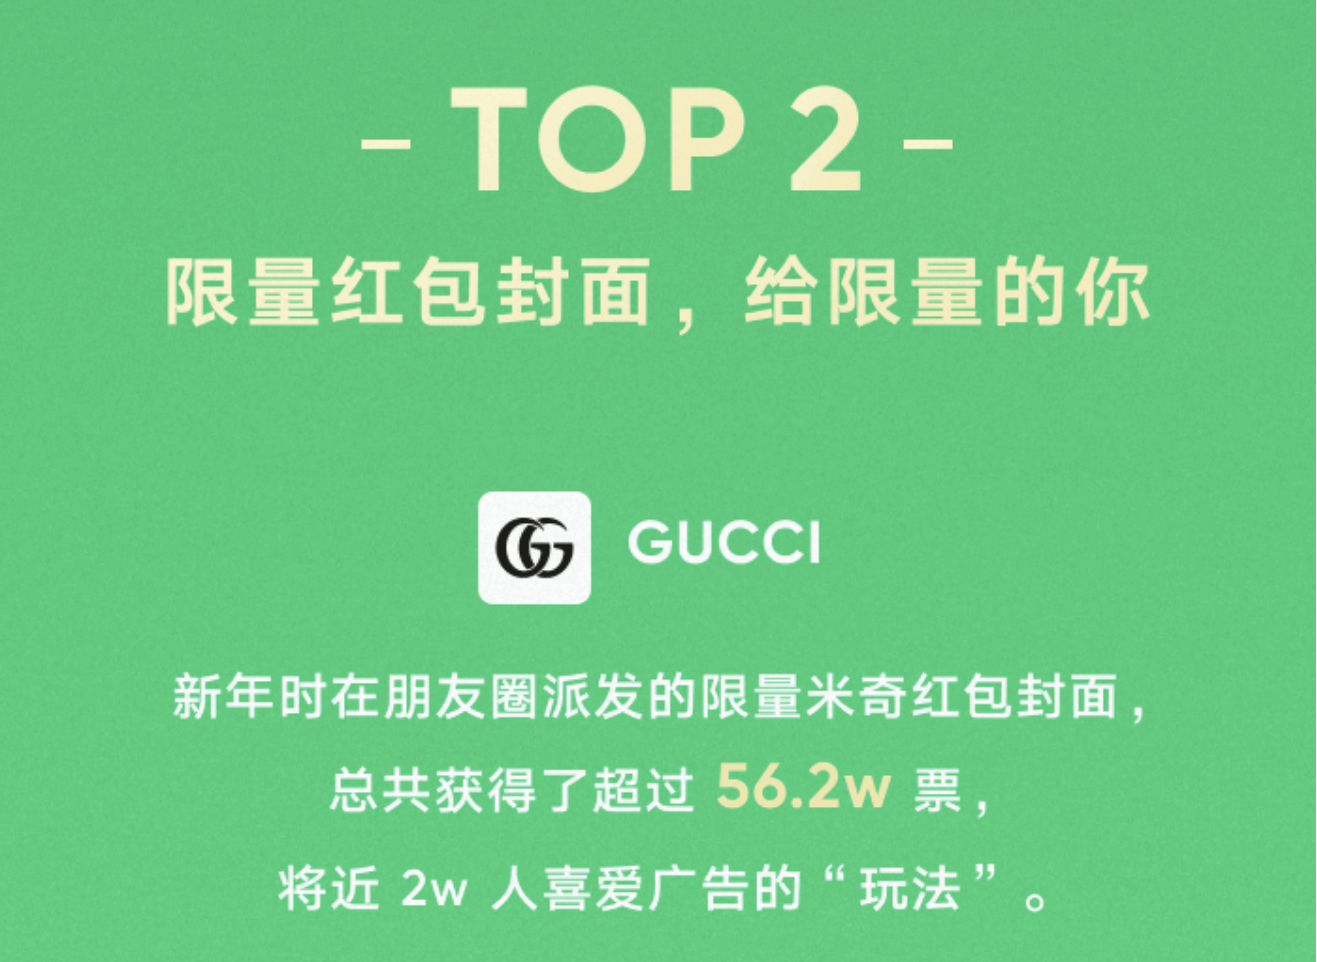 Gucci米奇限量红包荣获用户最喜爱的朋友圈广告第二名_封面